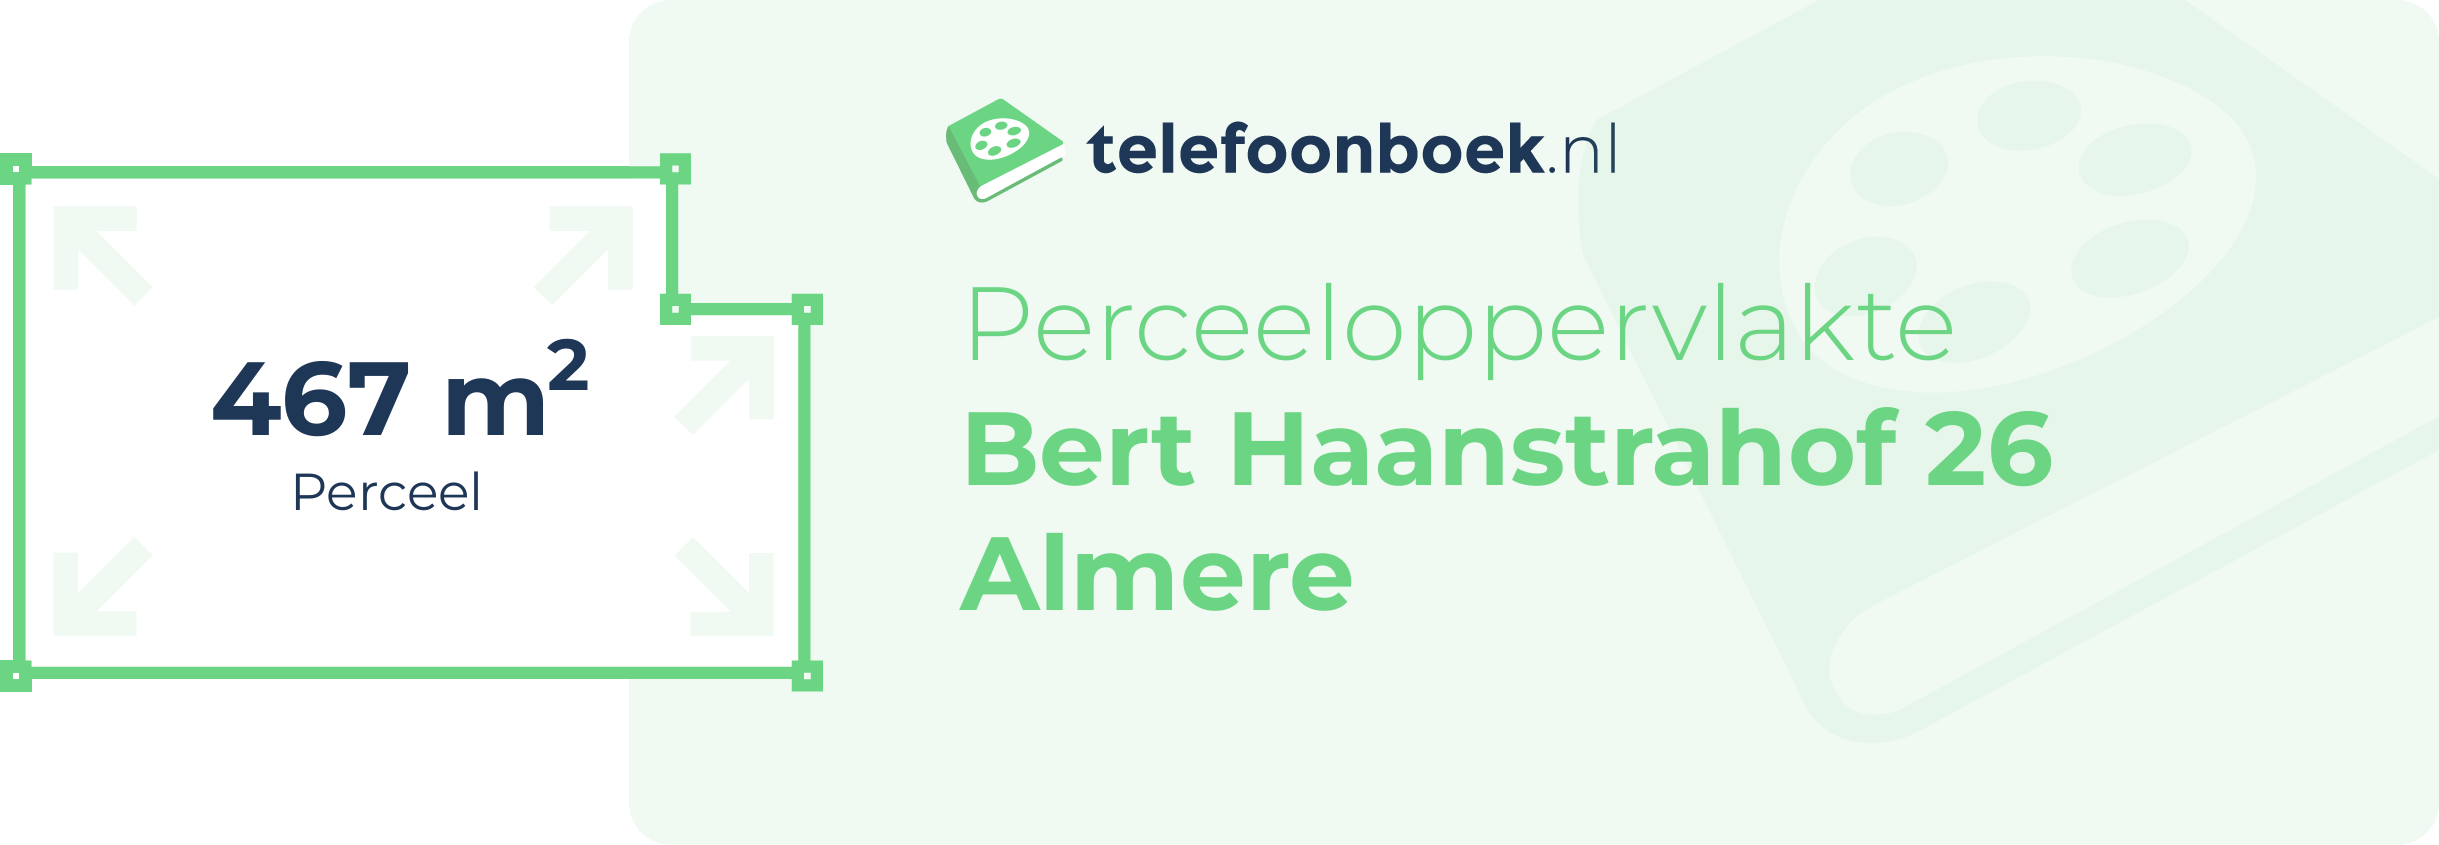 Perceeloppervlakte Bert Haanstrahof 26 Almere